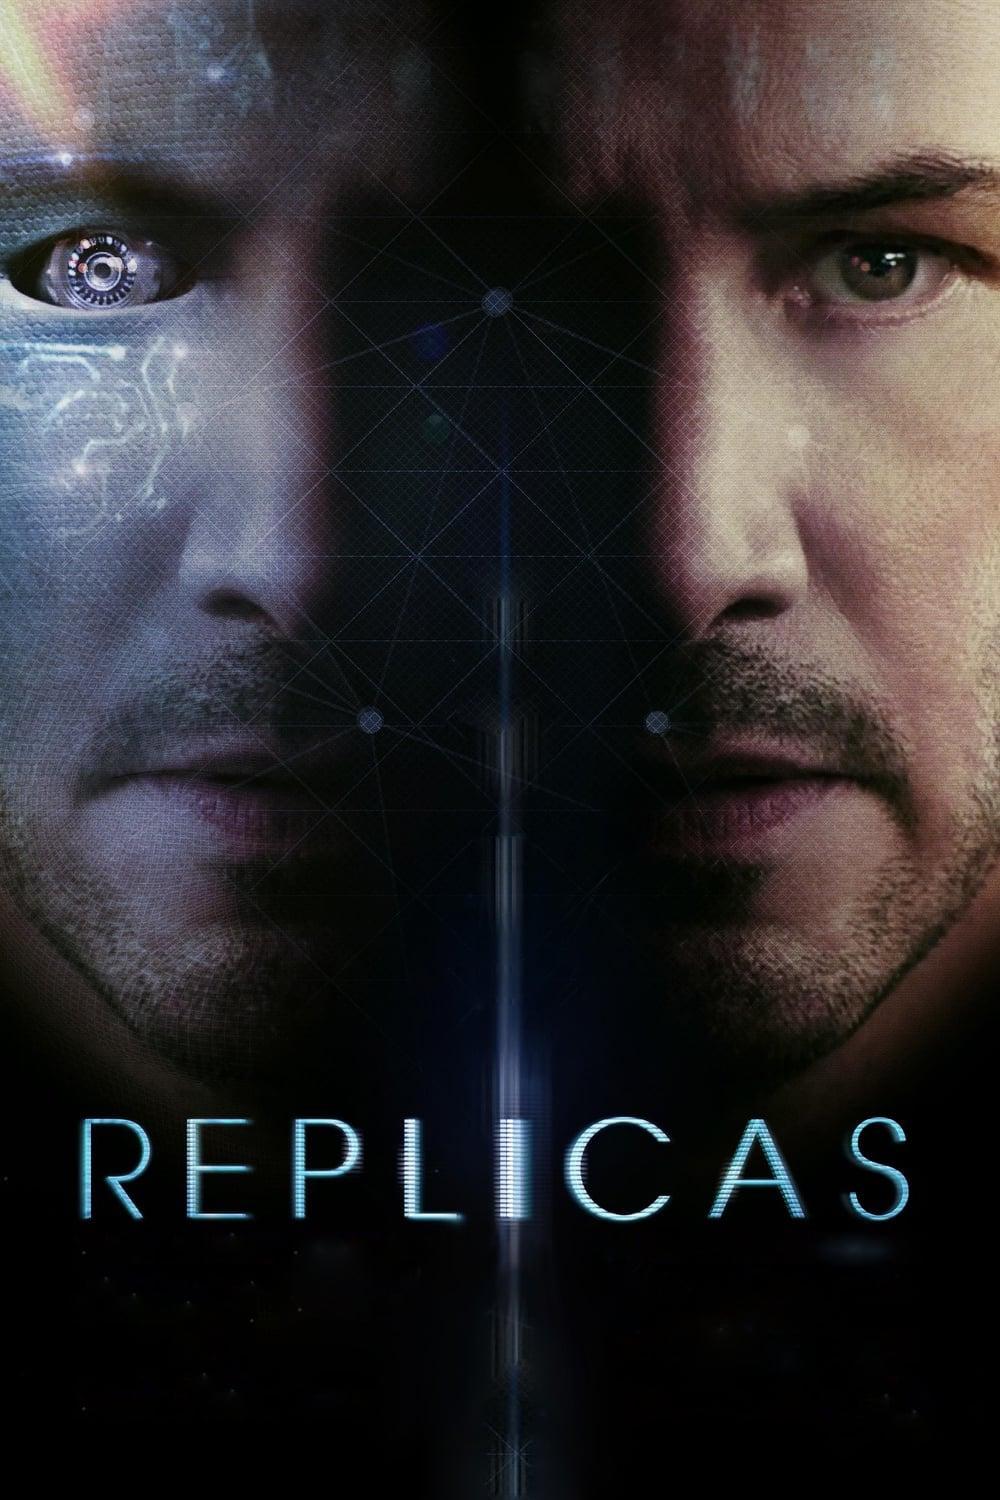 Replicas poster